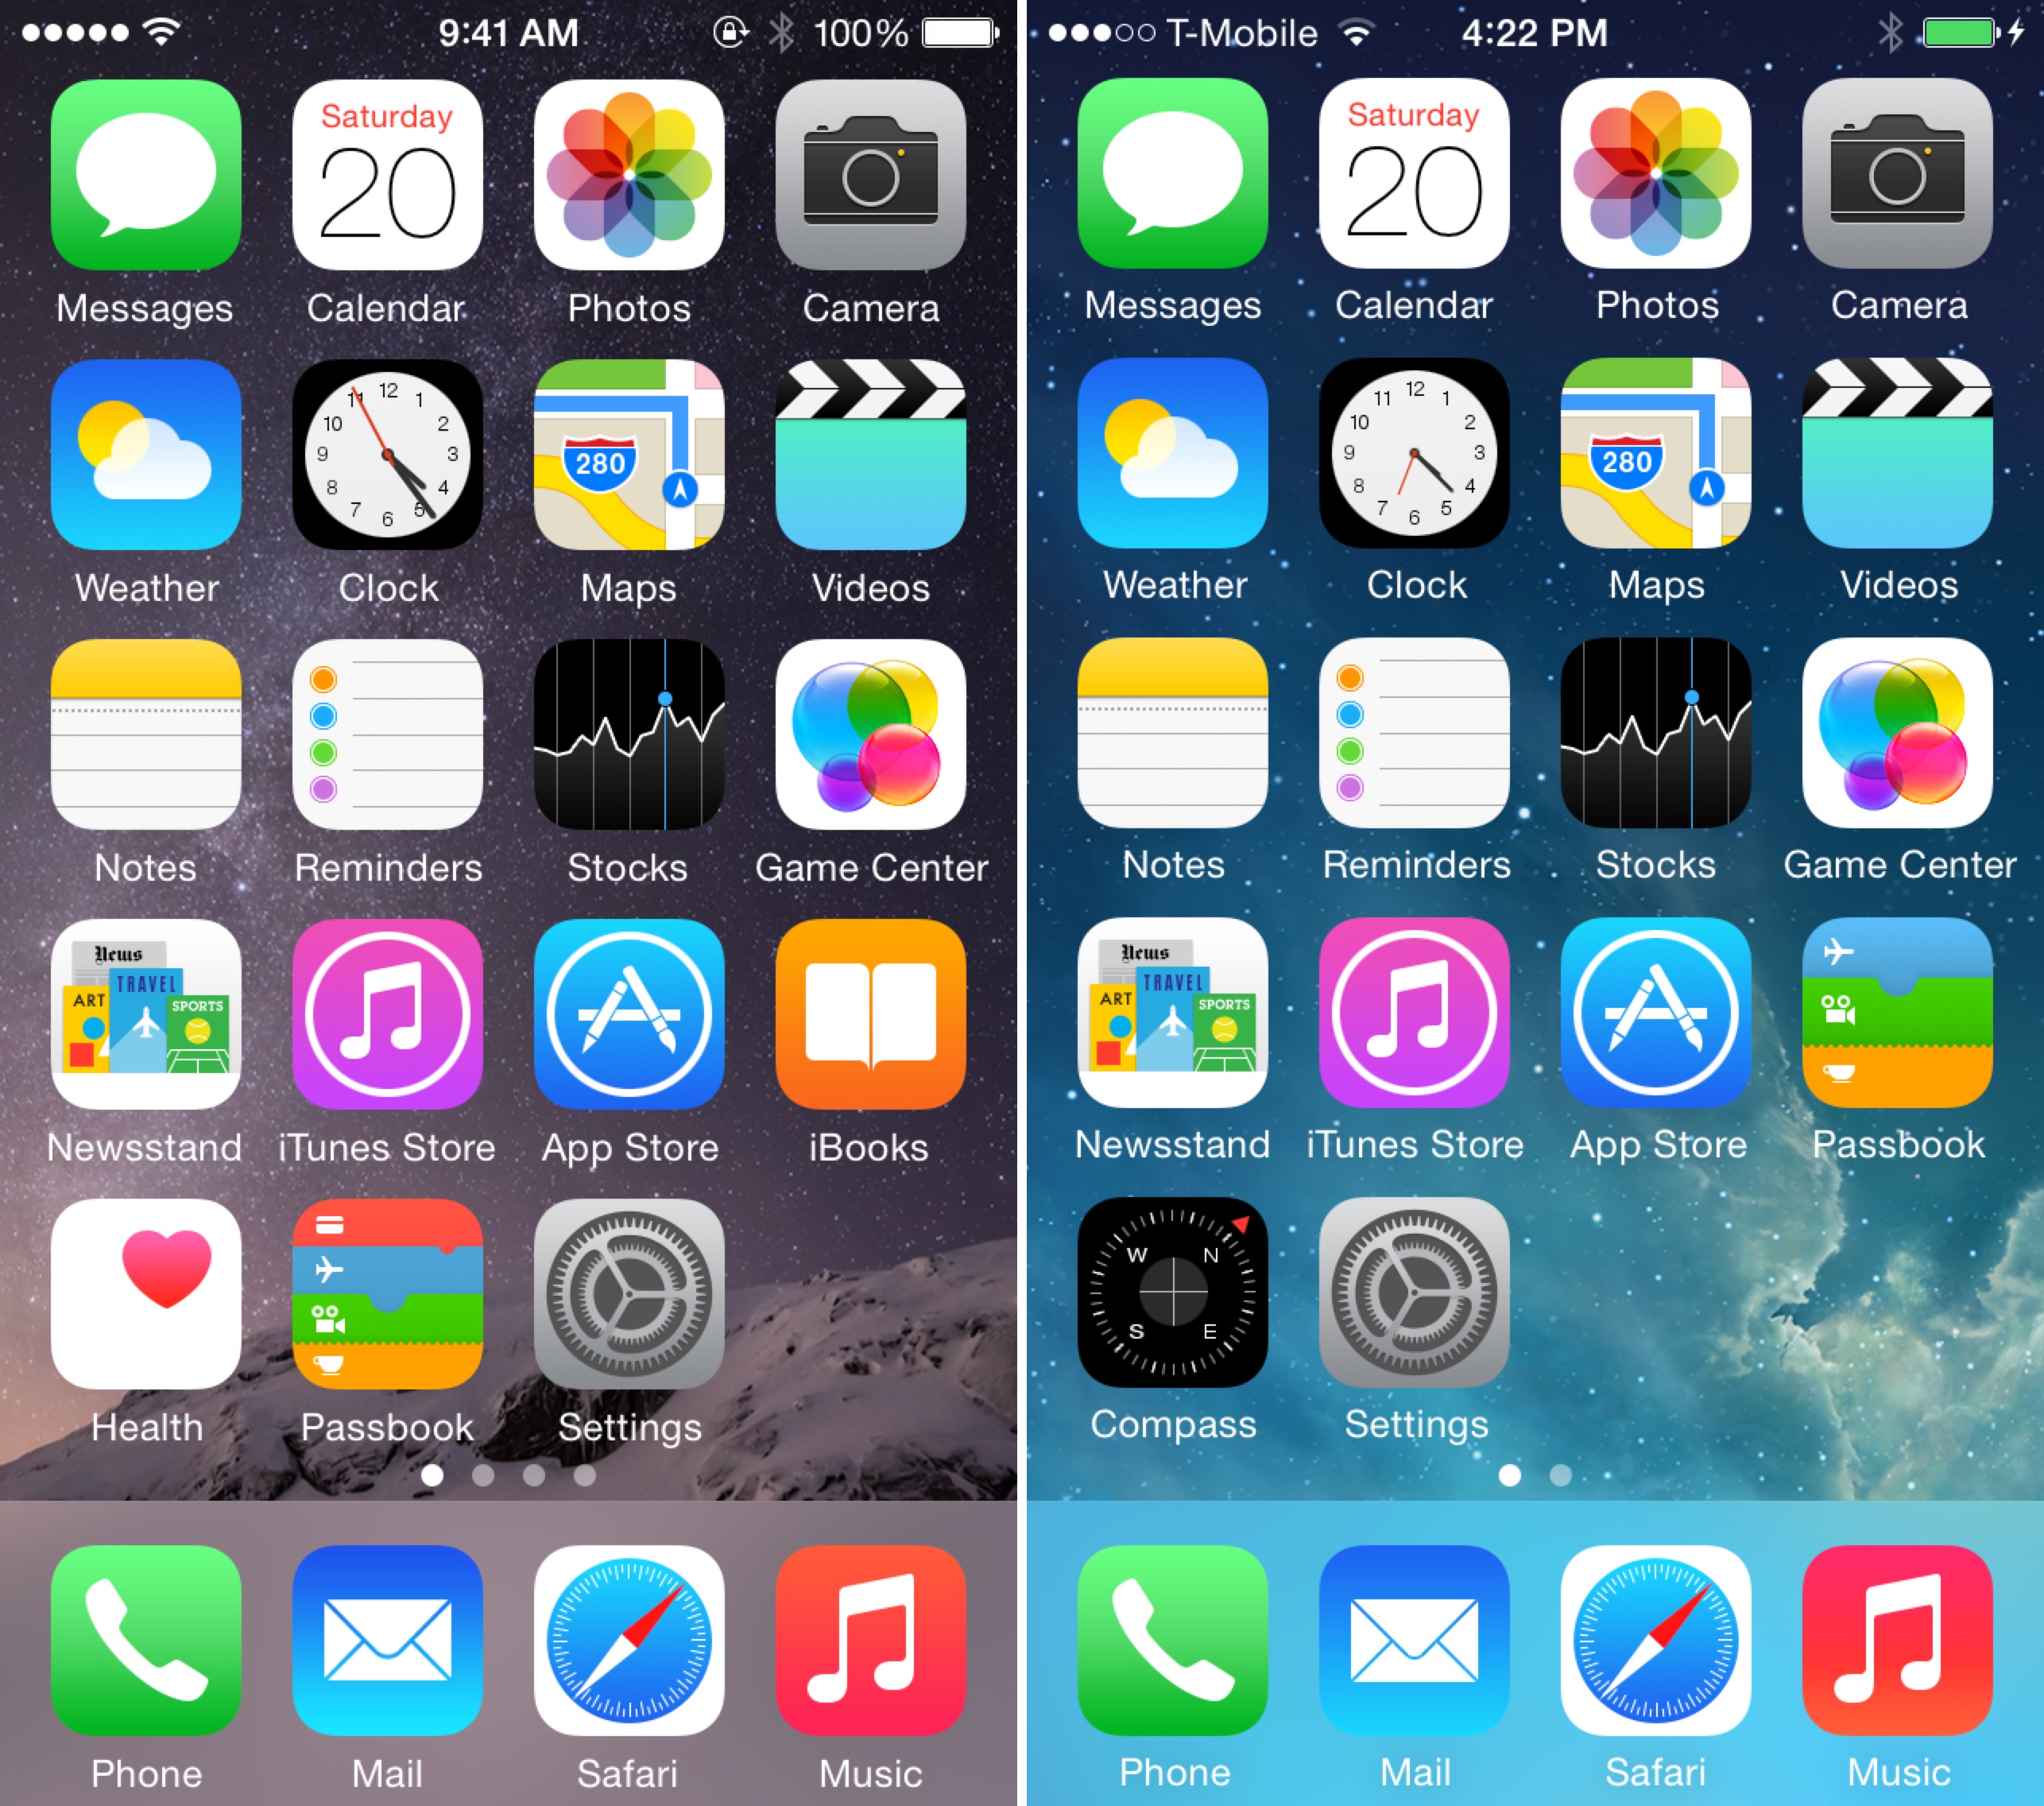 iOS 8 vs iOS 7